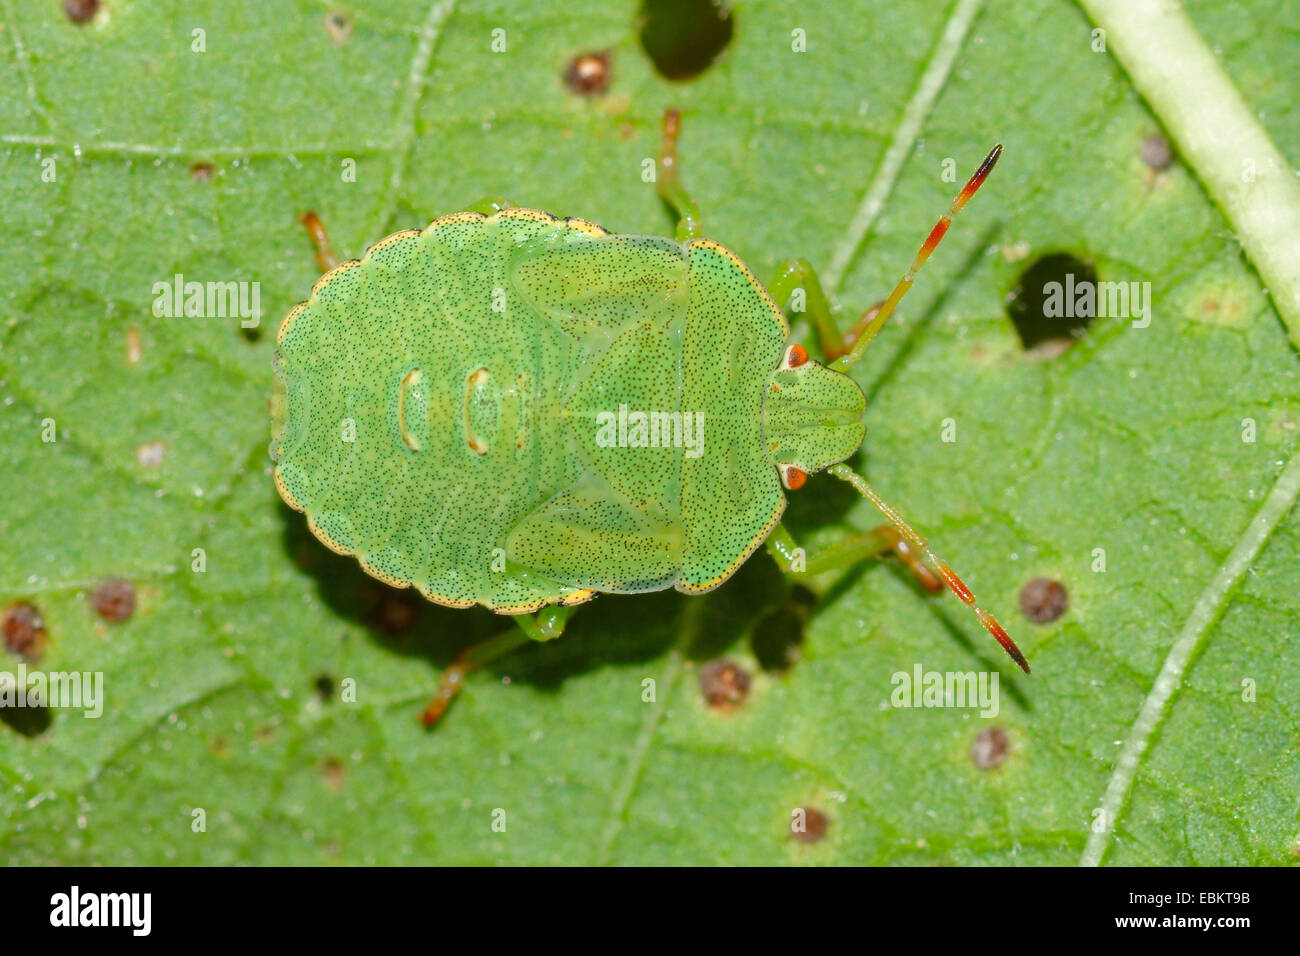 grünes Schild Bug, gemeinsamen grünen Schild Bug (Palomena Prasina), sitzt auf einem Blatt, Deutschland Stockfoto